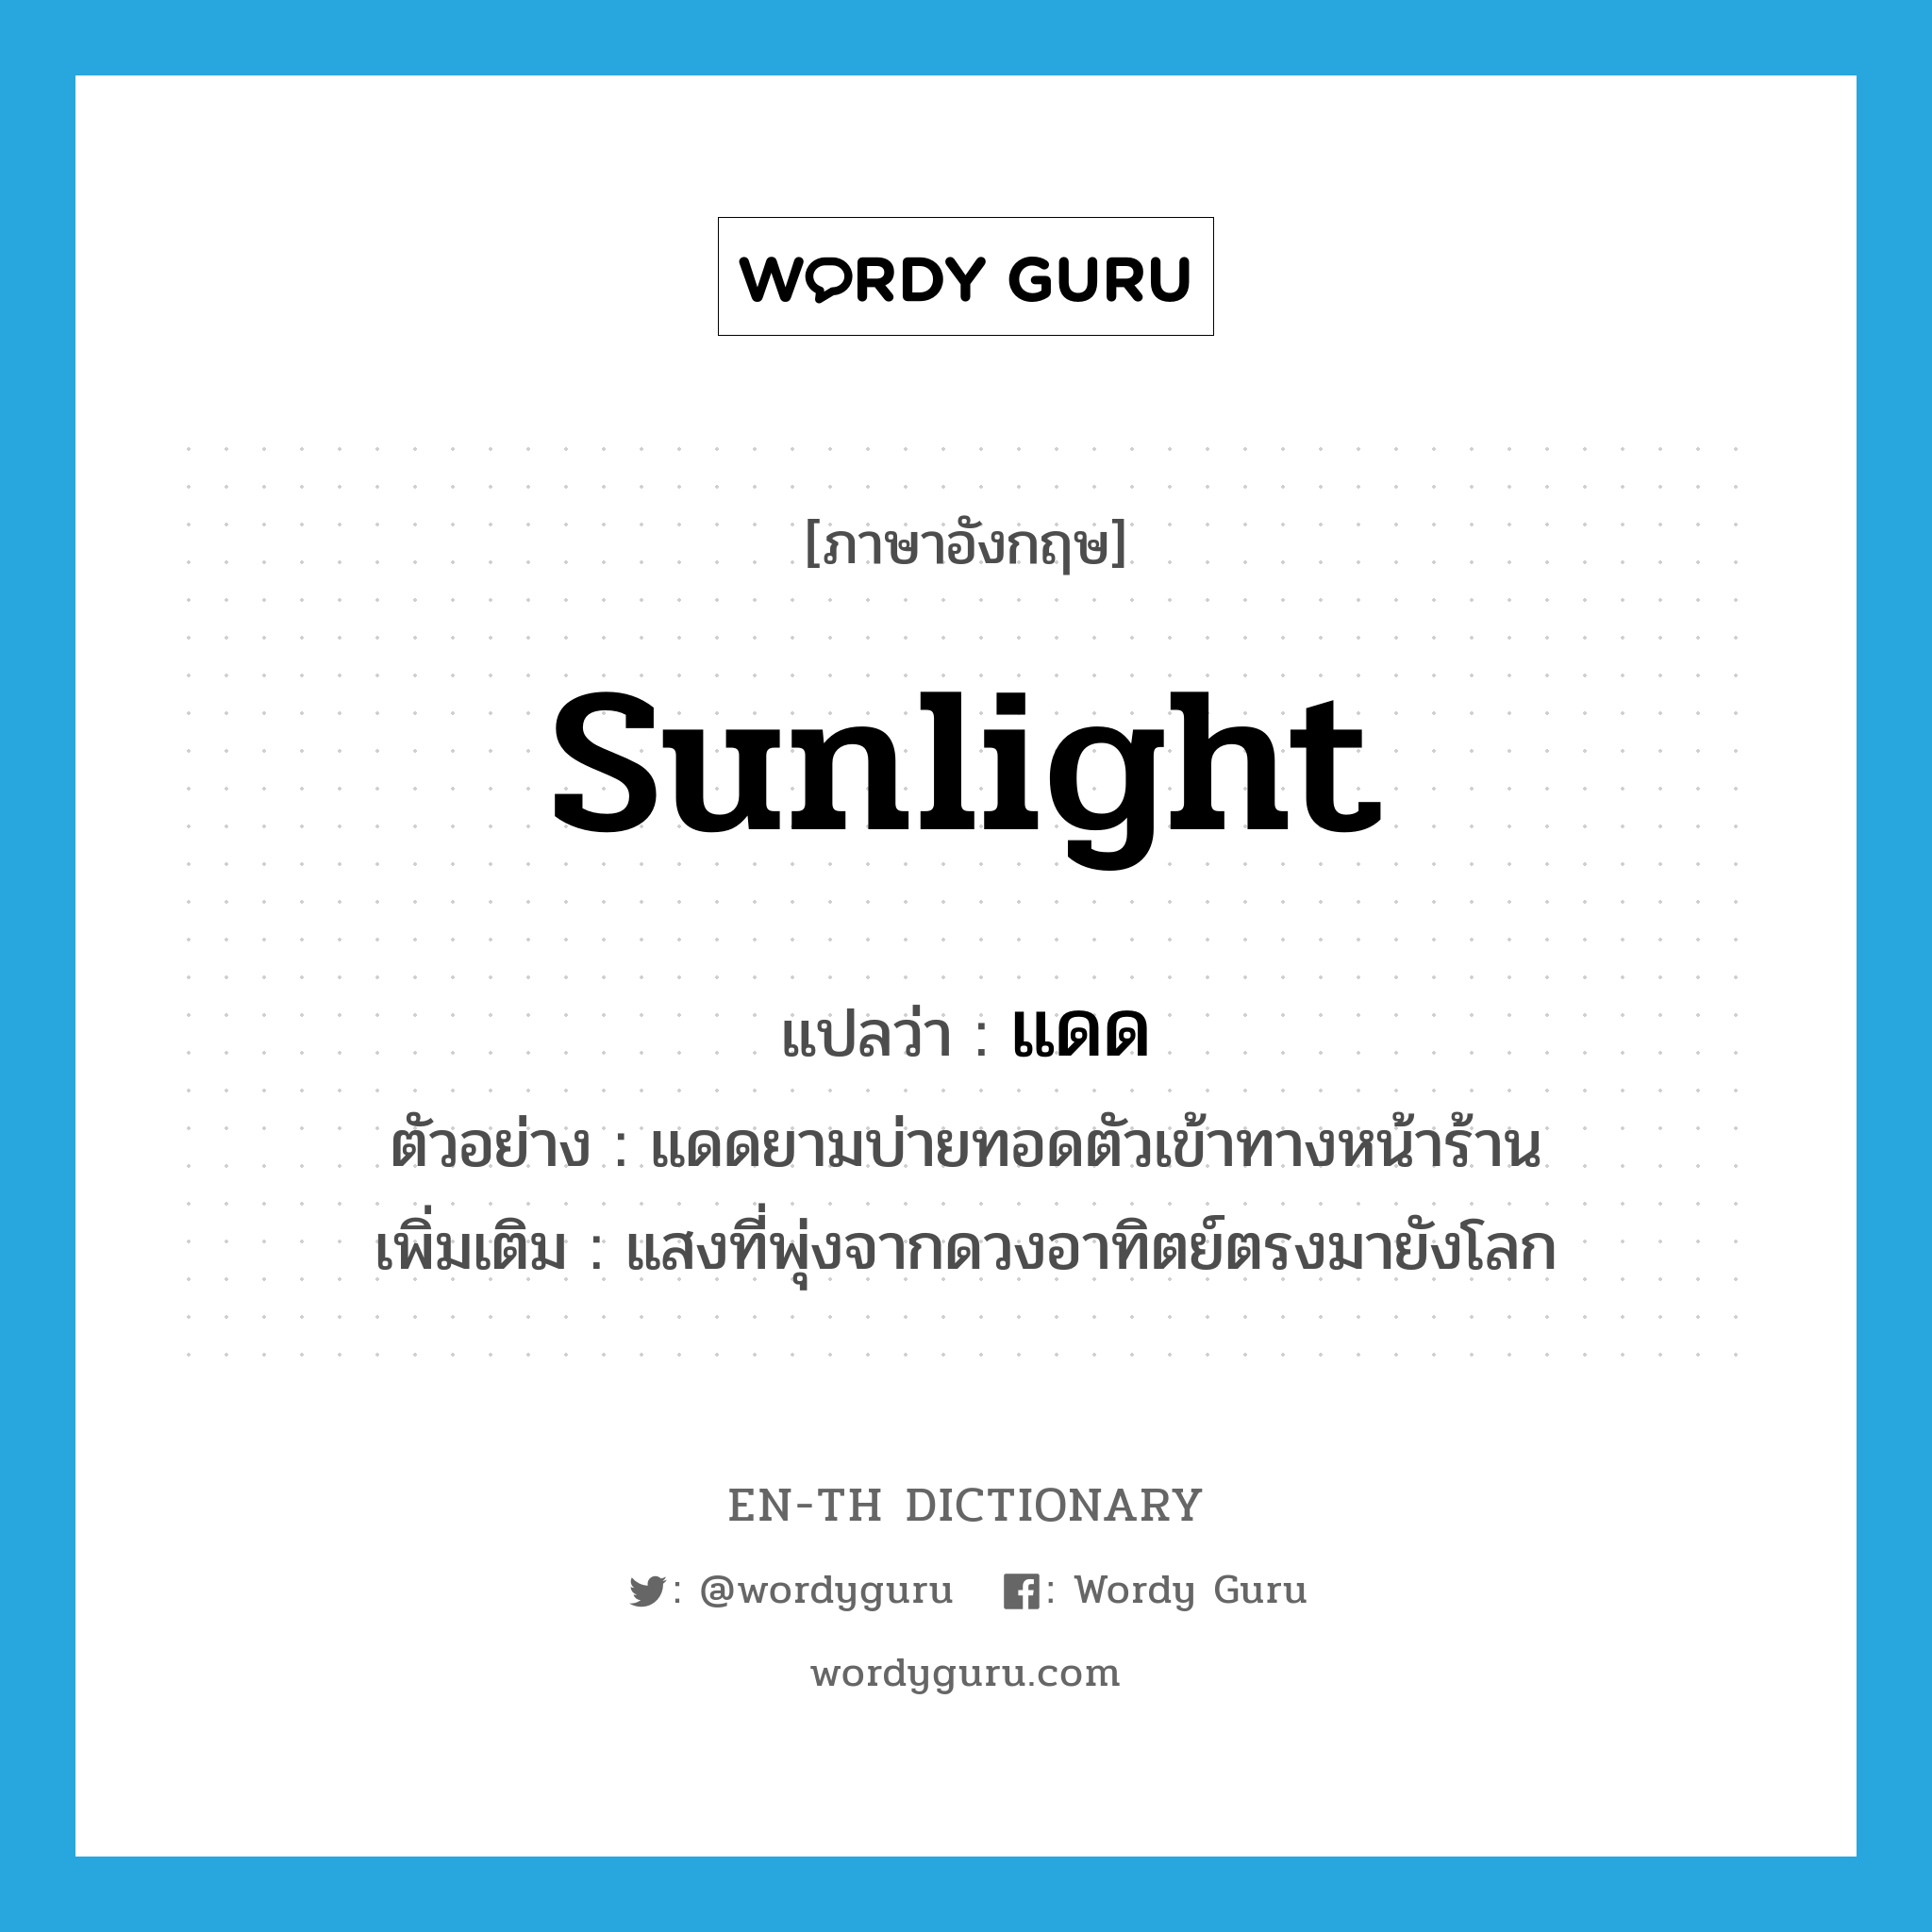 sunlight แปลว่า?, คำศัพท์ภาษาอังกฤษ sunlight แปลว่า แดด ประเภท N ตัวอย่าง แดดยามบ่ายทอดตัวเข้าทางหน้าร้าน เพิ่มเติม แสงที่พุ่งจากดวงอาทิตย์ตรงมายังโลก หมวด N